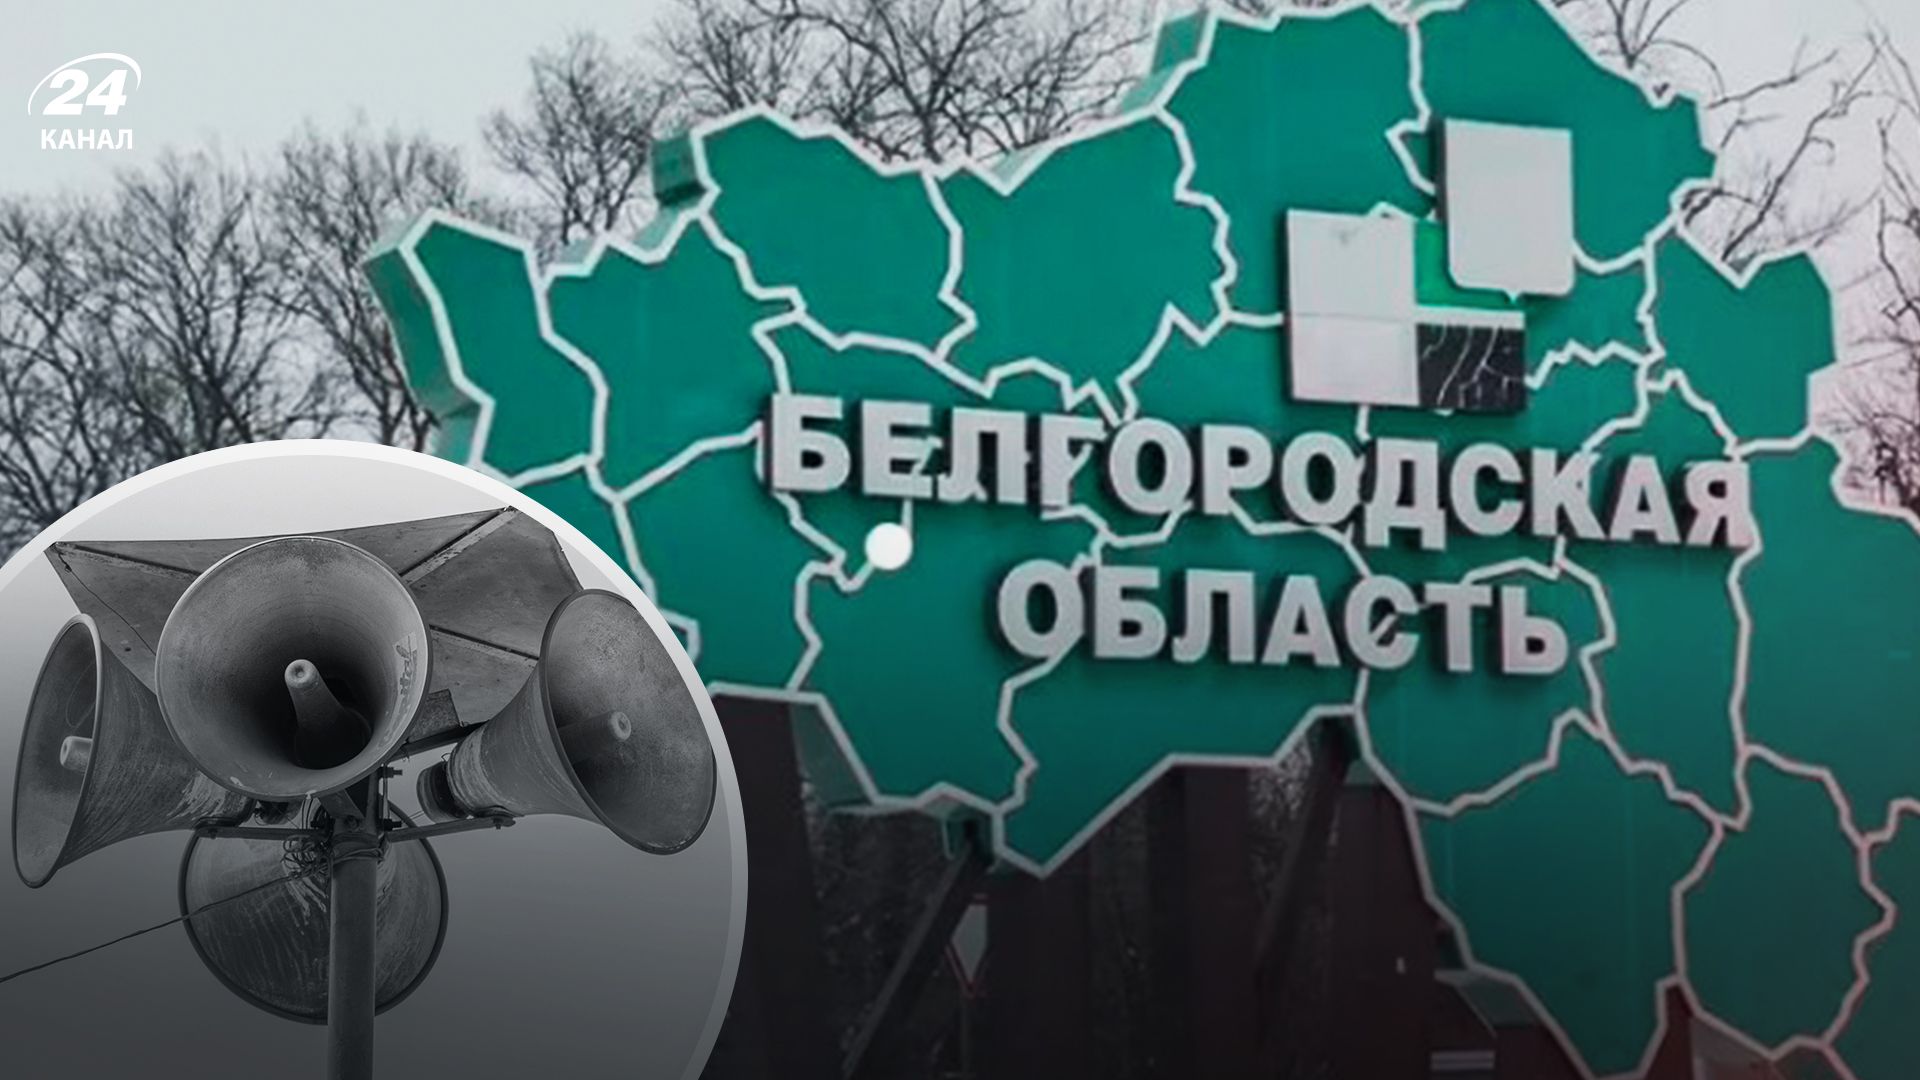 Снова тревожно: в Белгороде раздаются сирены - 24 Канал